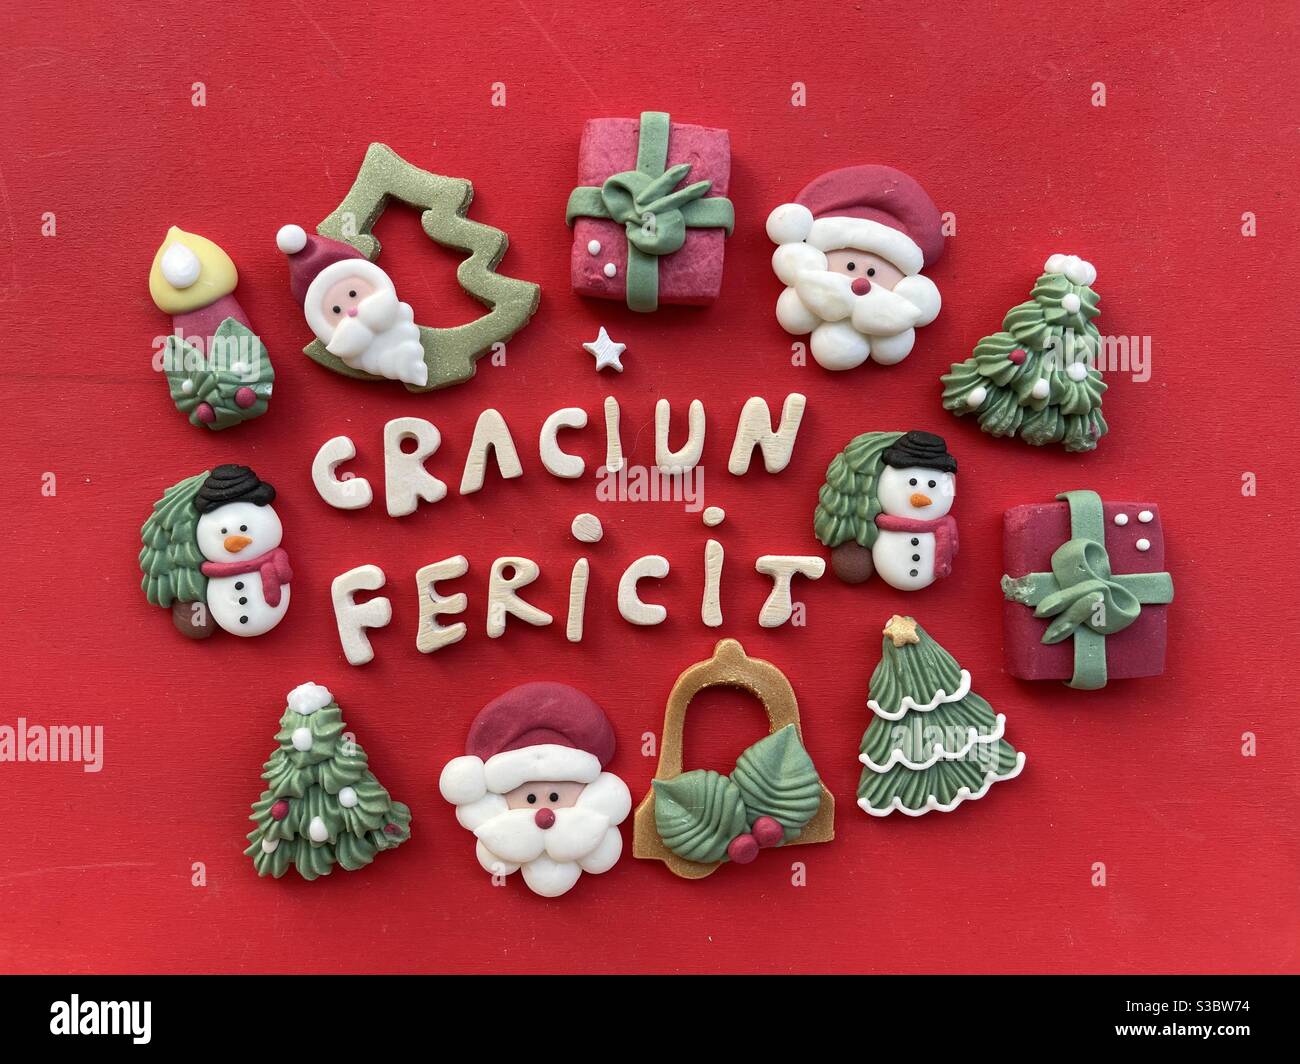 Craciun Fericit, heiraten Weihnachten in rumänischer Sprache mit Holzbuchstaben und Marzipan Weihnachten Symbole auf rotem Hintergrund Stockfoto